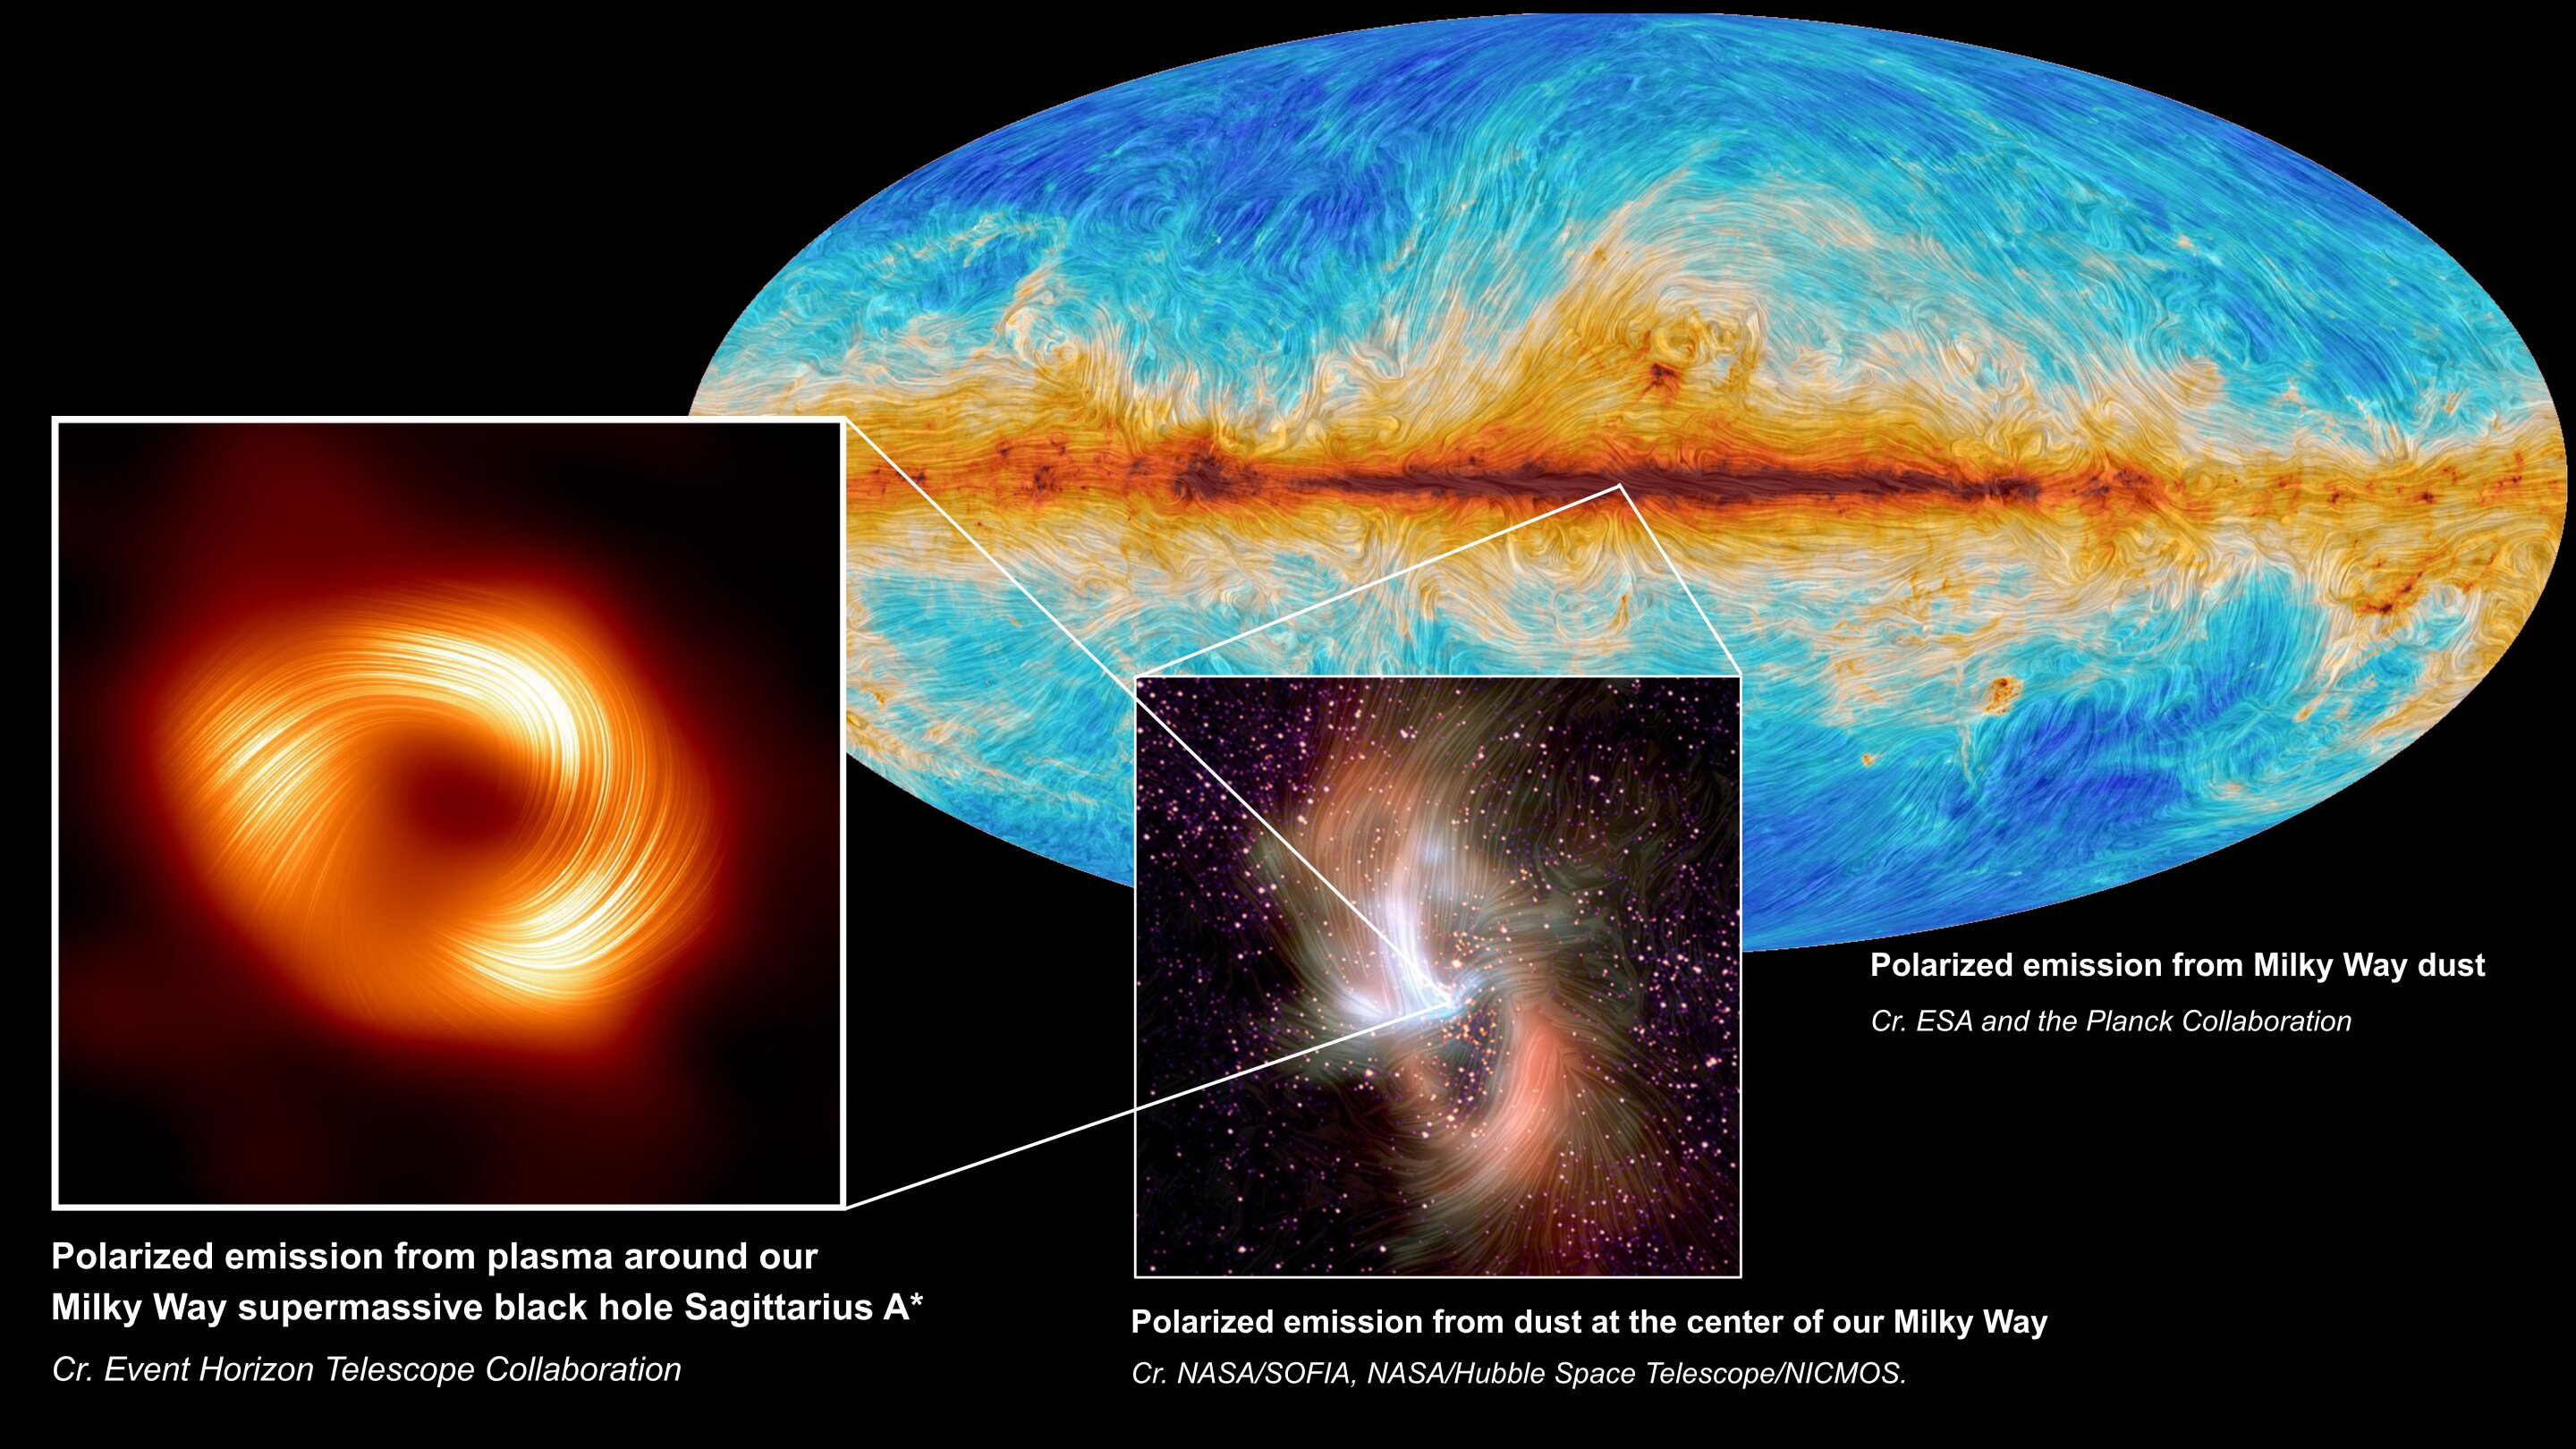 À esquerda, o buraco negro supermassivo no centro da Via Láctea, Sagittarius A*, é visto em luz polarizada, com as linhas visíveis indicando a orientação da polarização, que está relacionada ao campo magnético ao redor da sombra do buraco negro. No centro, a emissão polarizada do centro da Via Láctea, conforme capturada pelo SOFIA. Na parte de trás, à direita, a Colaboração Planck mapeou a emissão polarizada da poeira em toda a Via Láctea. Crédito: S. Issaoun, Colaboração EHT